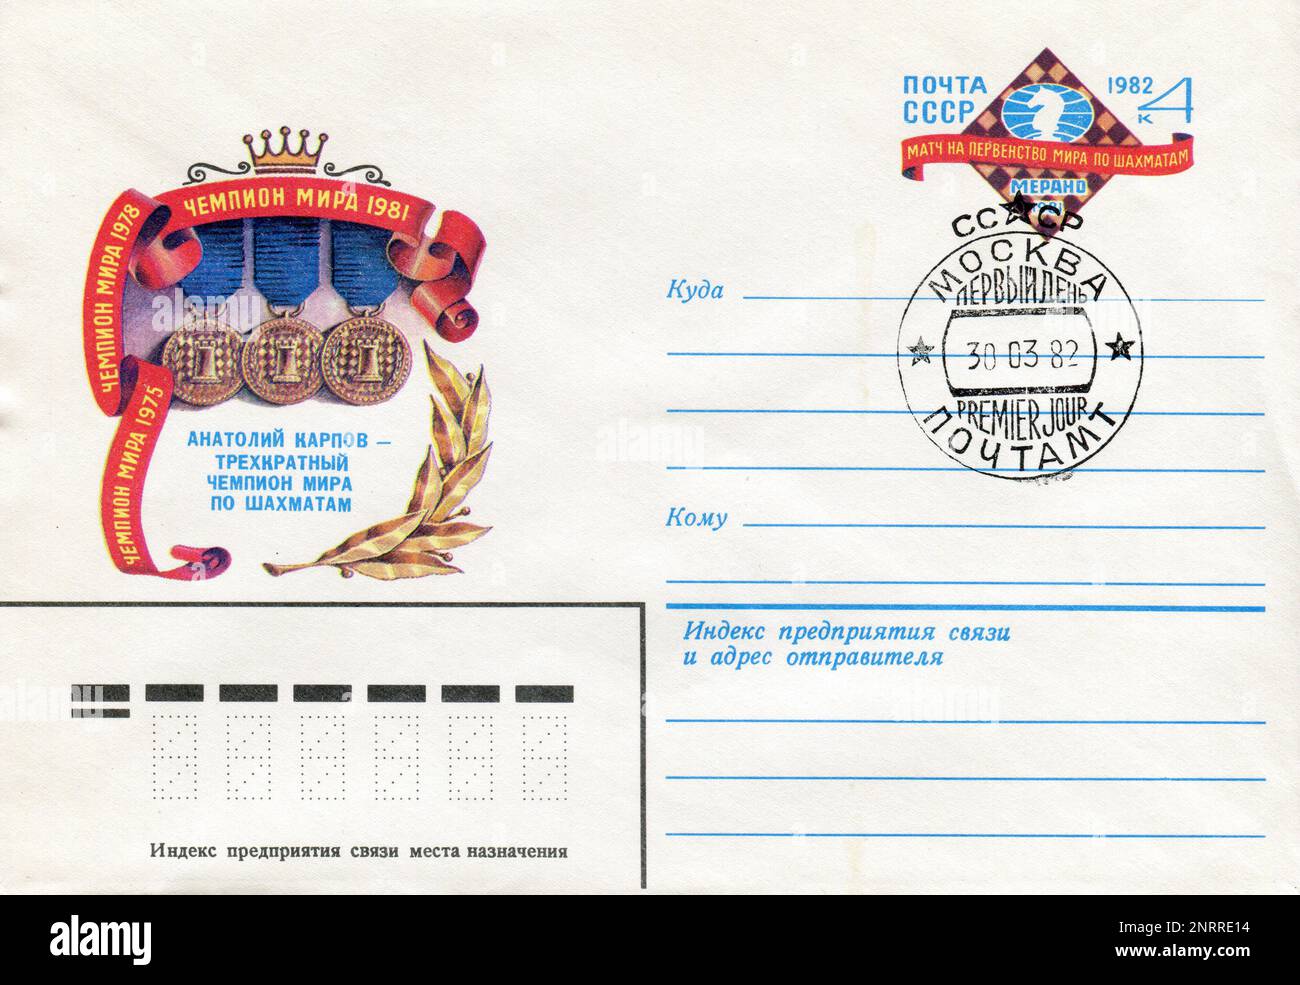 URSS - vers 1982: Une enveloppe postale de la première journée de l'URSS avec des timbres. Anatoly Yevgenyevitch Karpov (russe : Анатолий Евгеньевич Карпов; né 23 mai 1951) est un grand maître russe et ancien soviétique des échecs, ancien champion mondial des échecs, ⁣and politicien. Banque D'Images